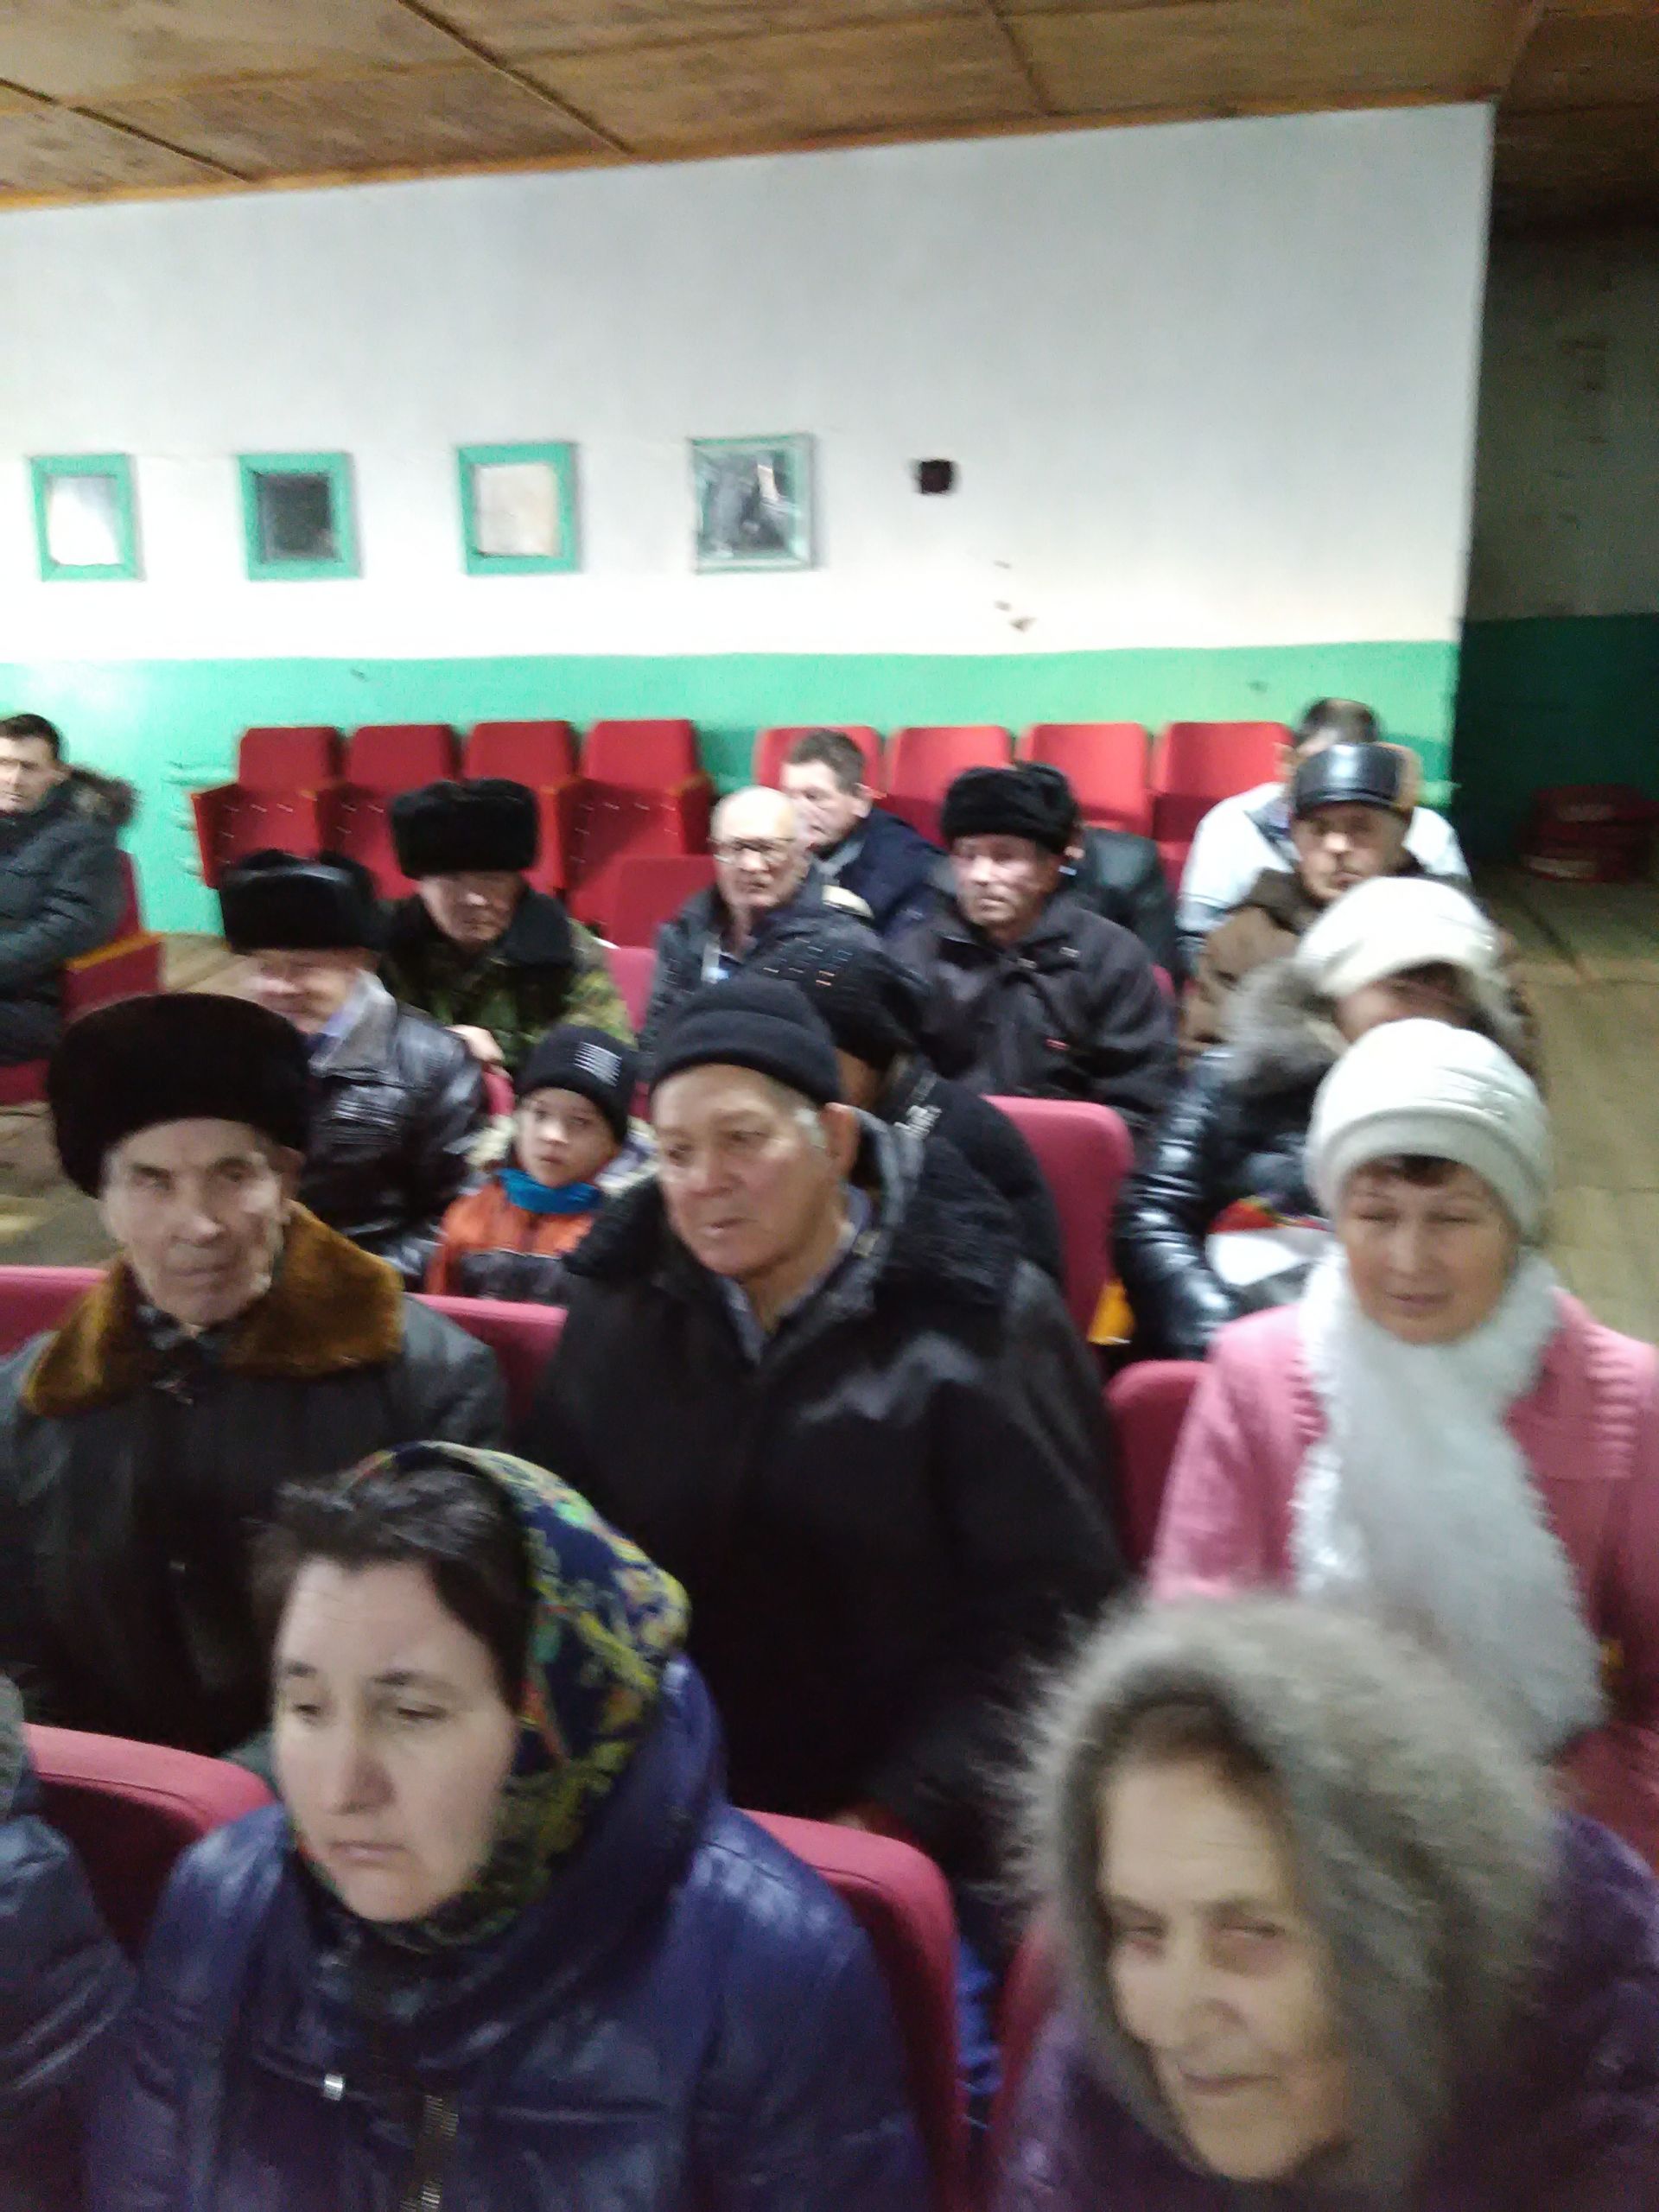 Сход граждан в Качеевском сельском поселении